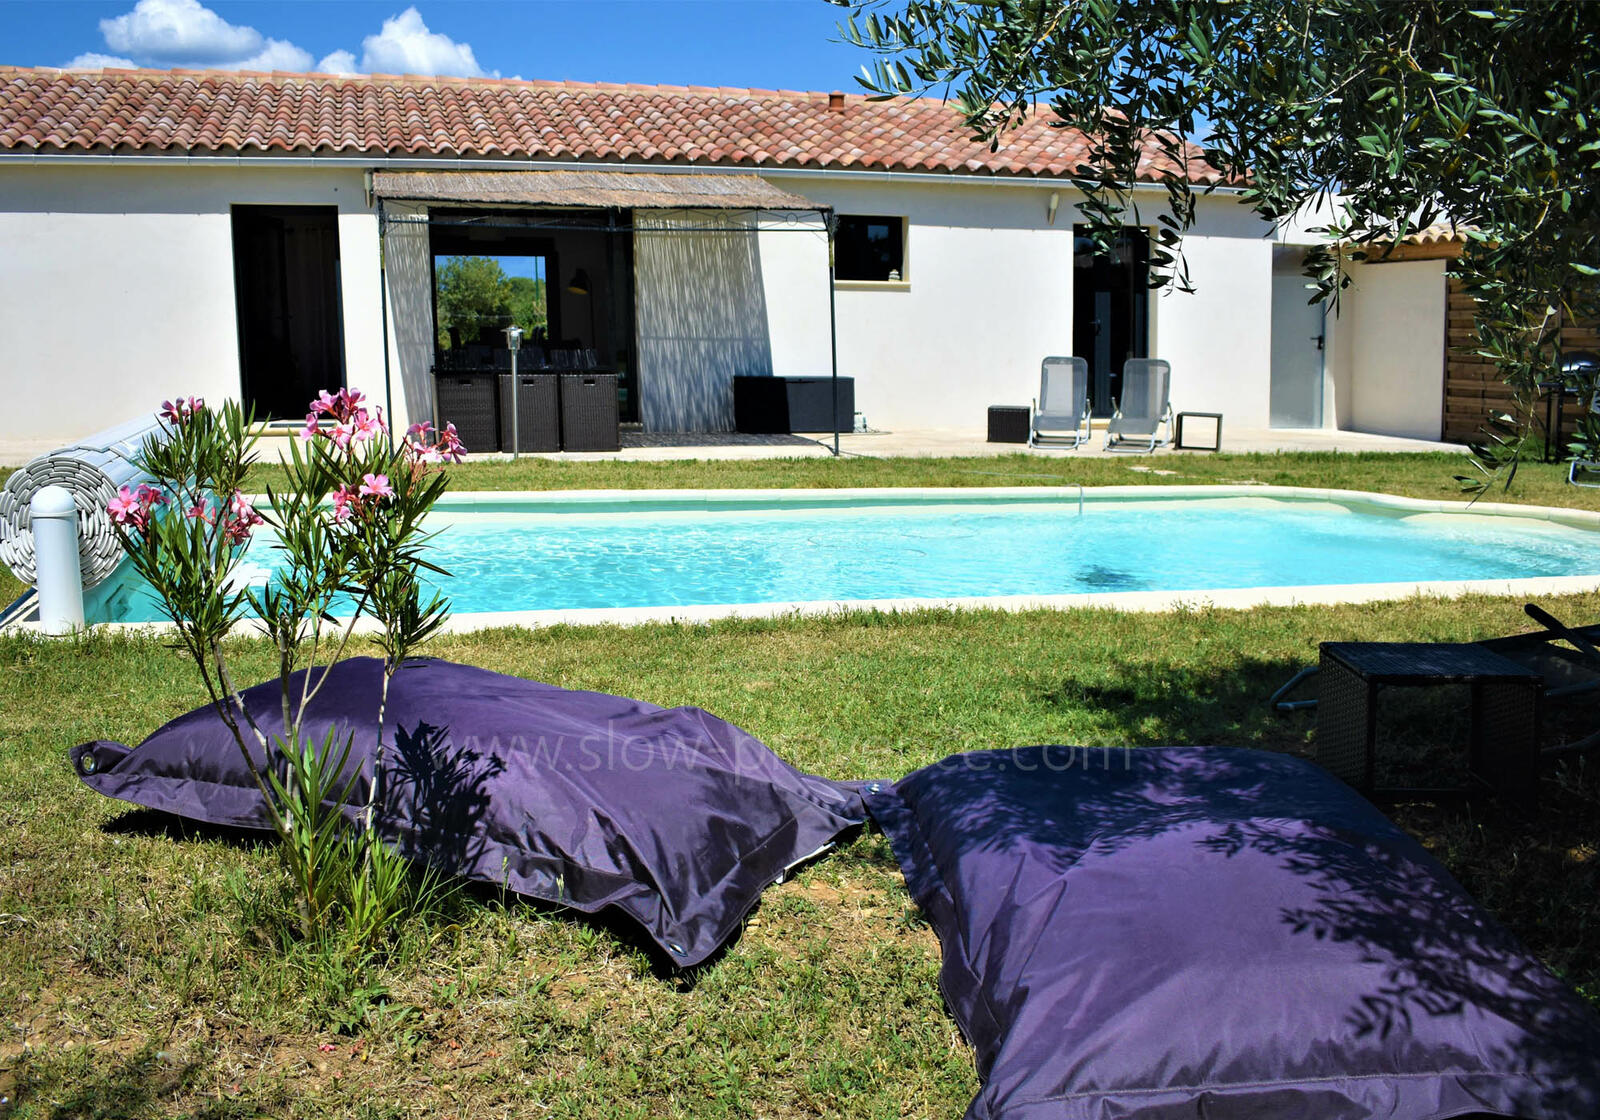 Une villa tout confort avec piscine et grand jardin de 5000m²